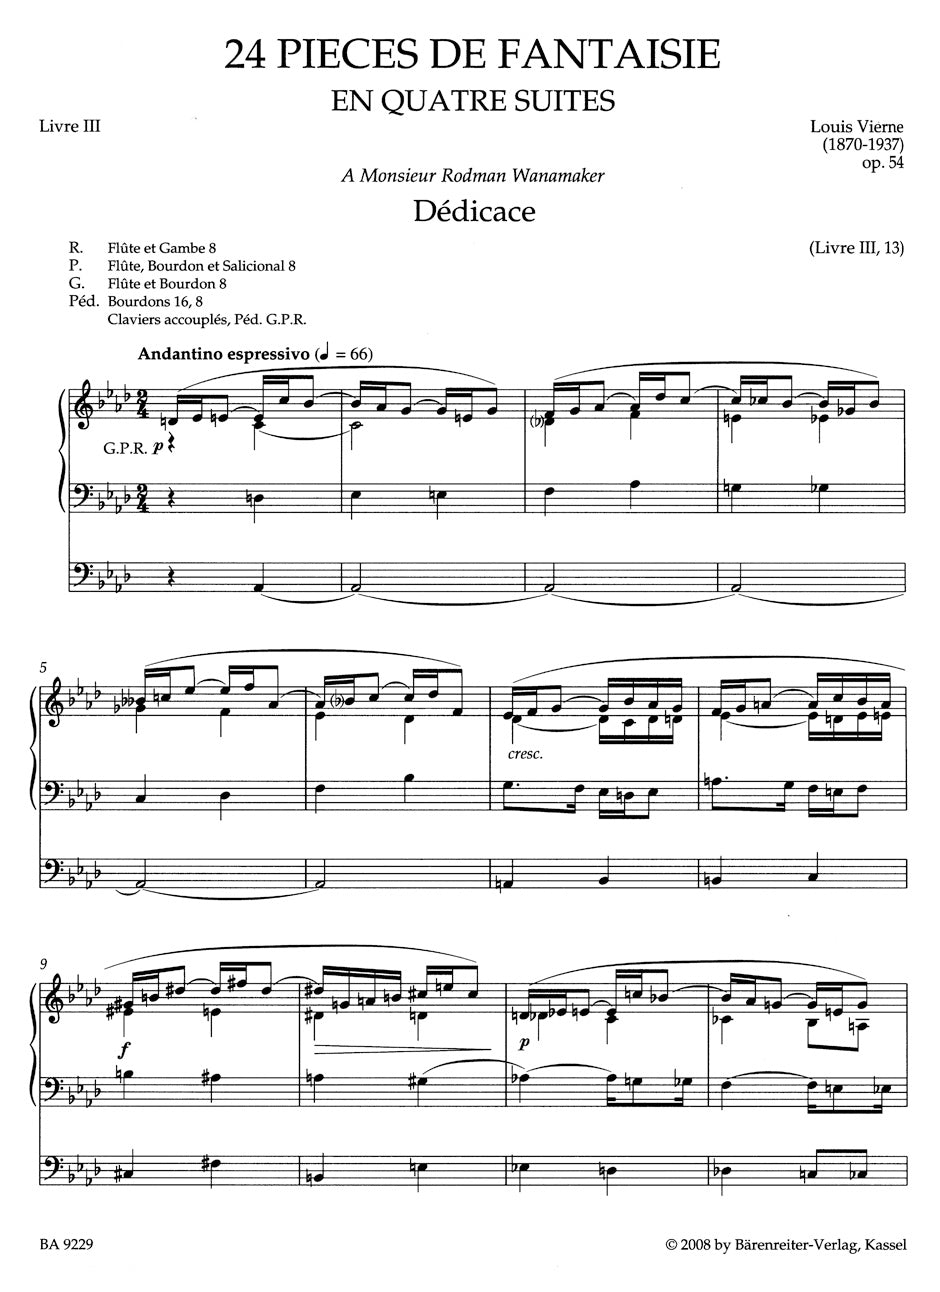 Vierne Pièces de Fantaisie en quatre suites, Livre III op. 54 (1927)